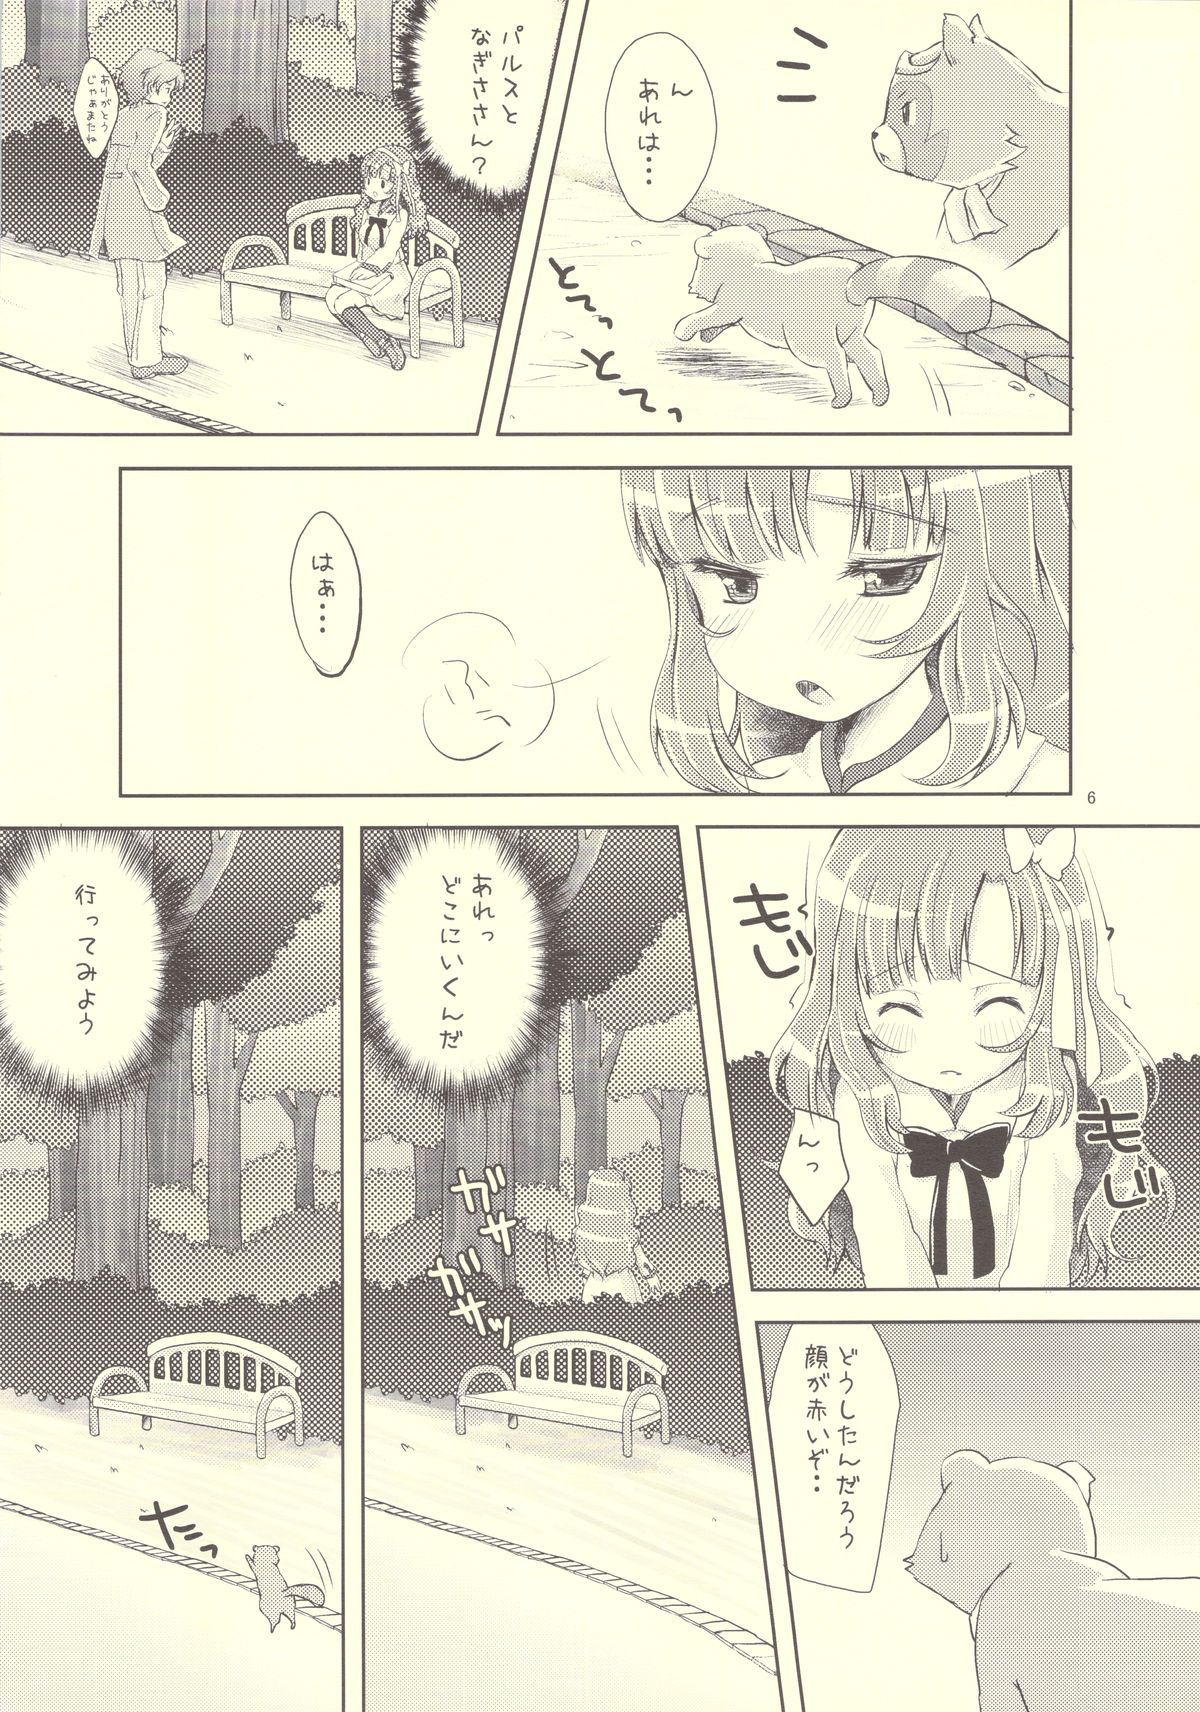 (COMIC1☆4) [MeltdoWN COmet (雪雨こん)] わんわんおっおー! (あにゃまる探偵 キルミンずぅ)